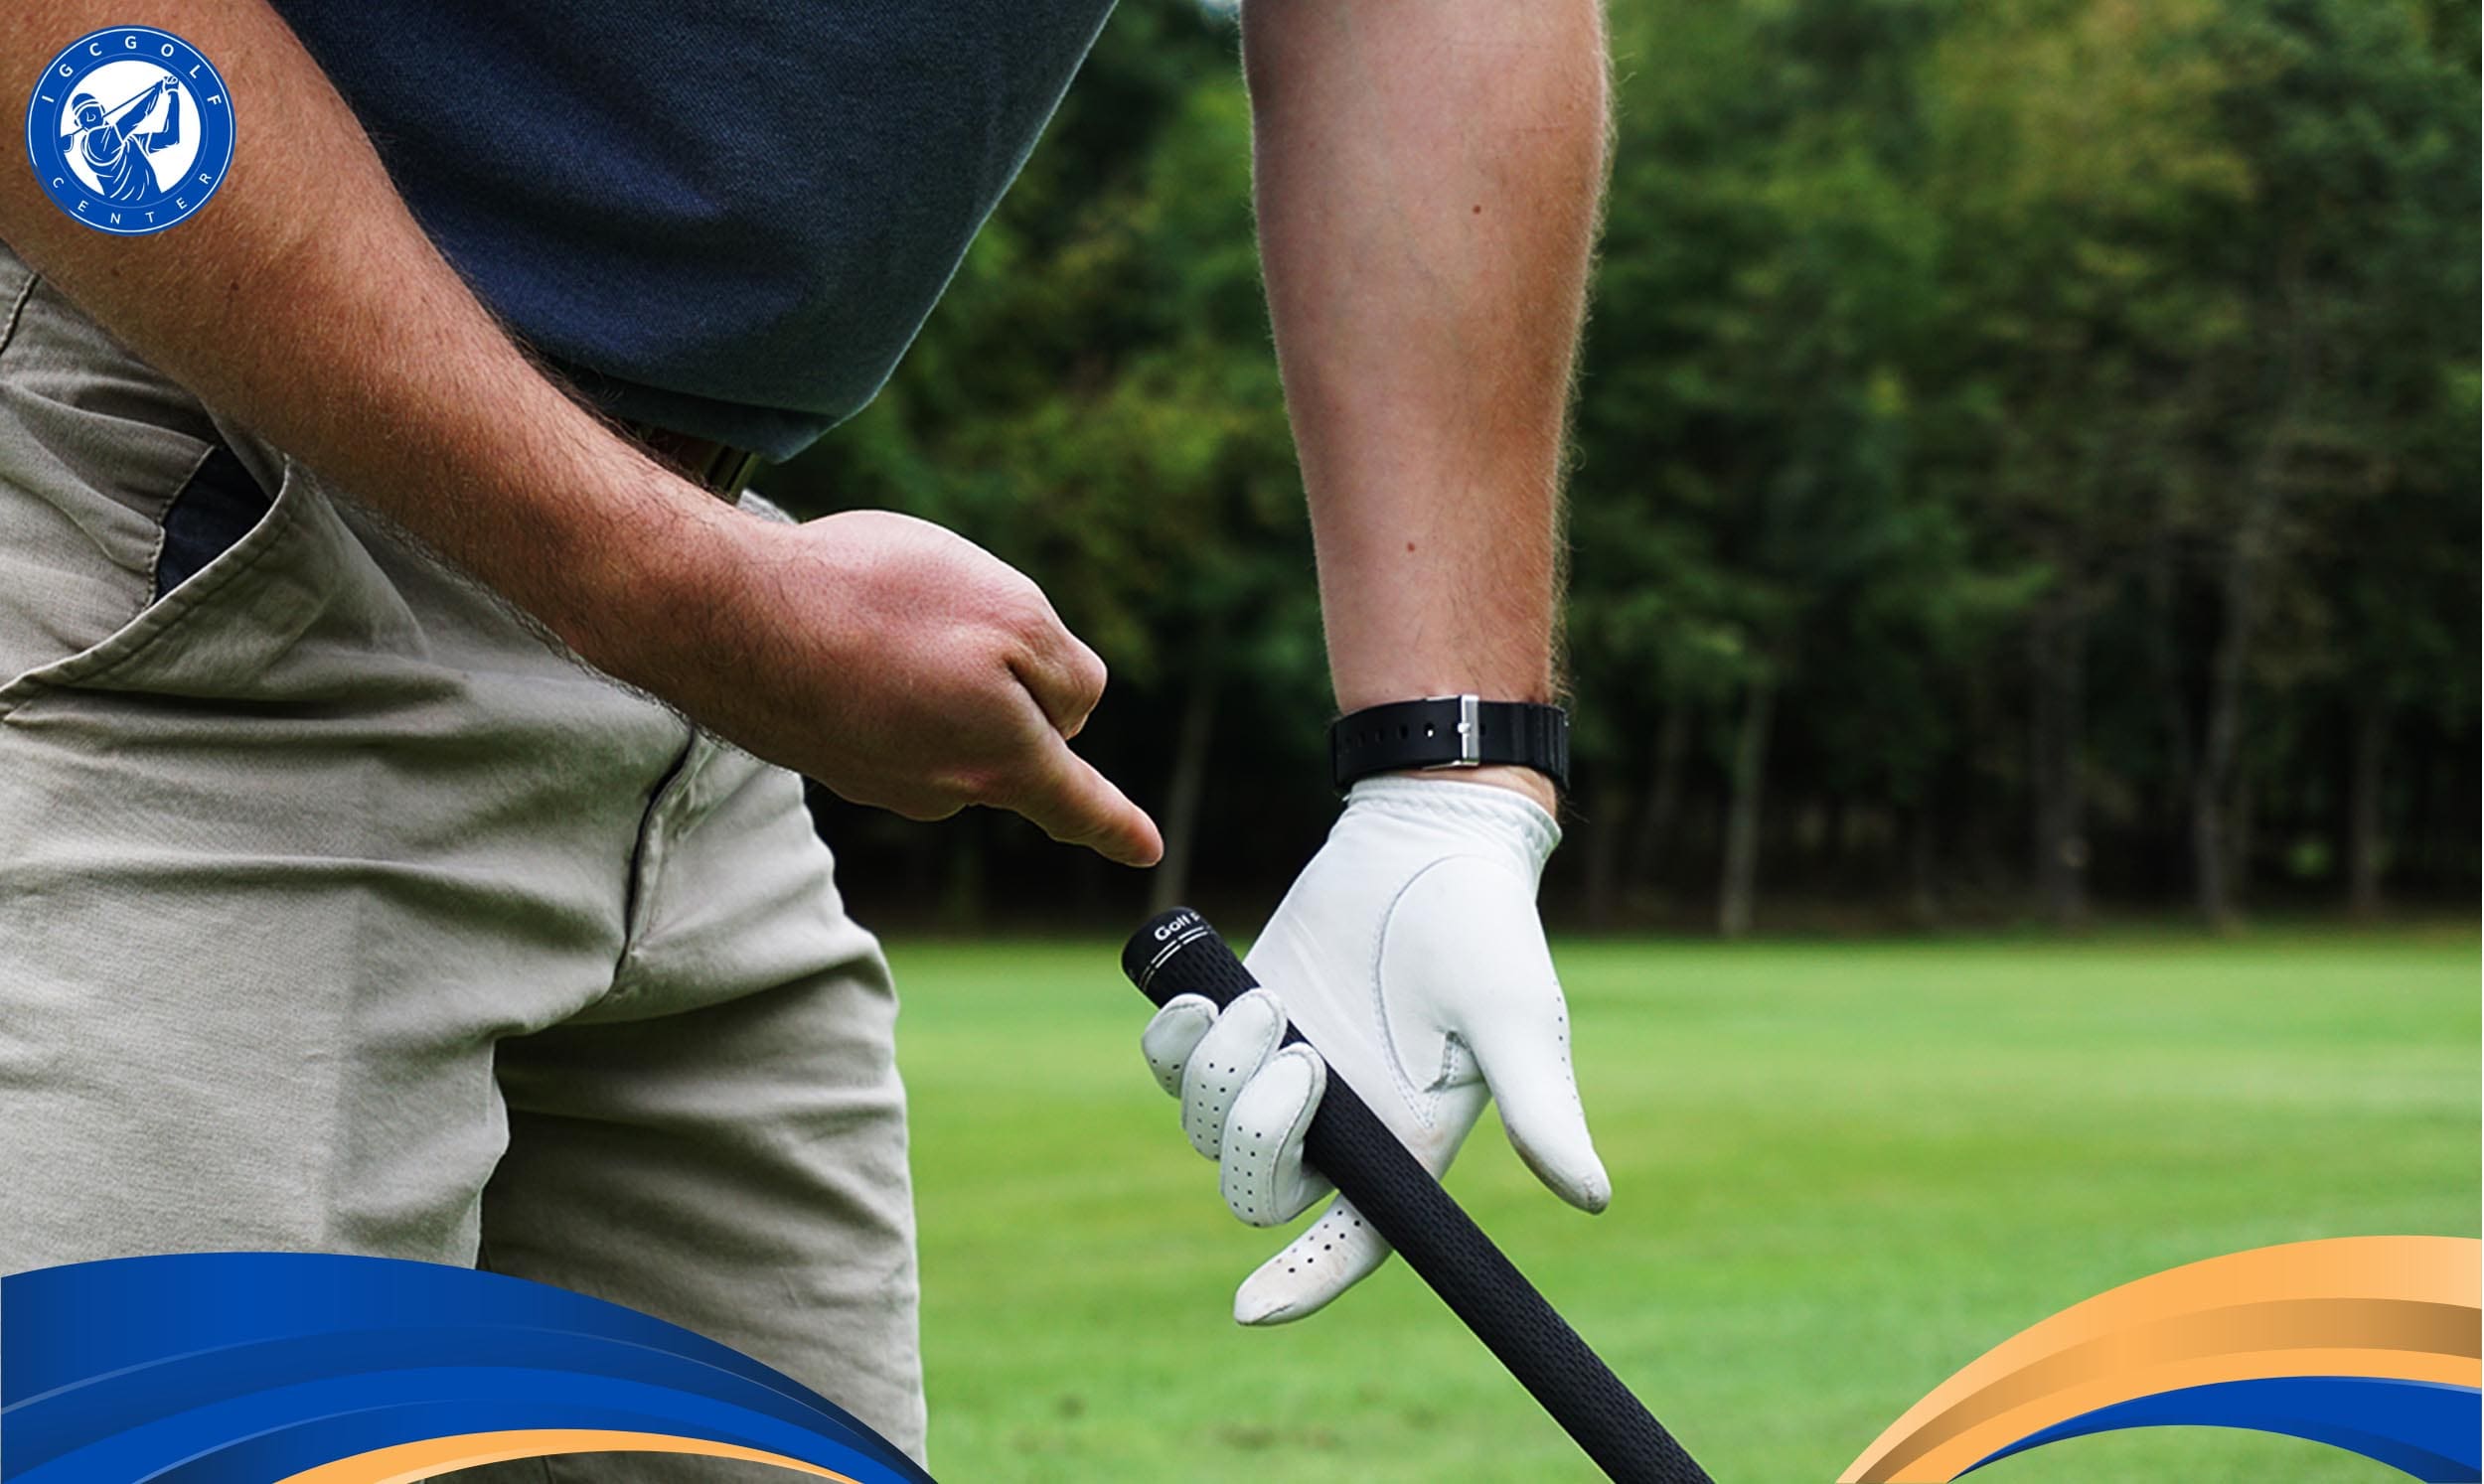 Tại sao các golfer cần học cách cầm gậy đúng